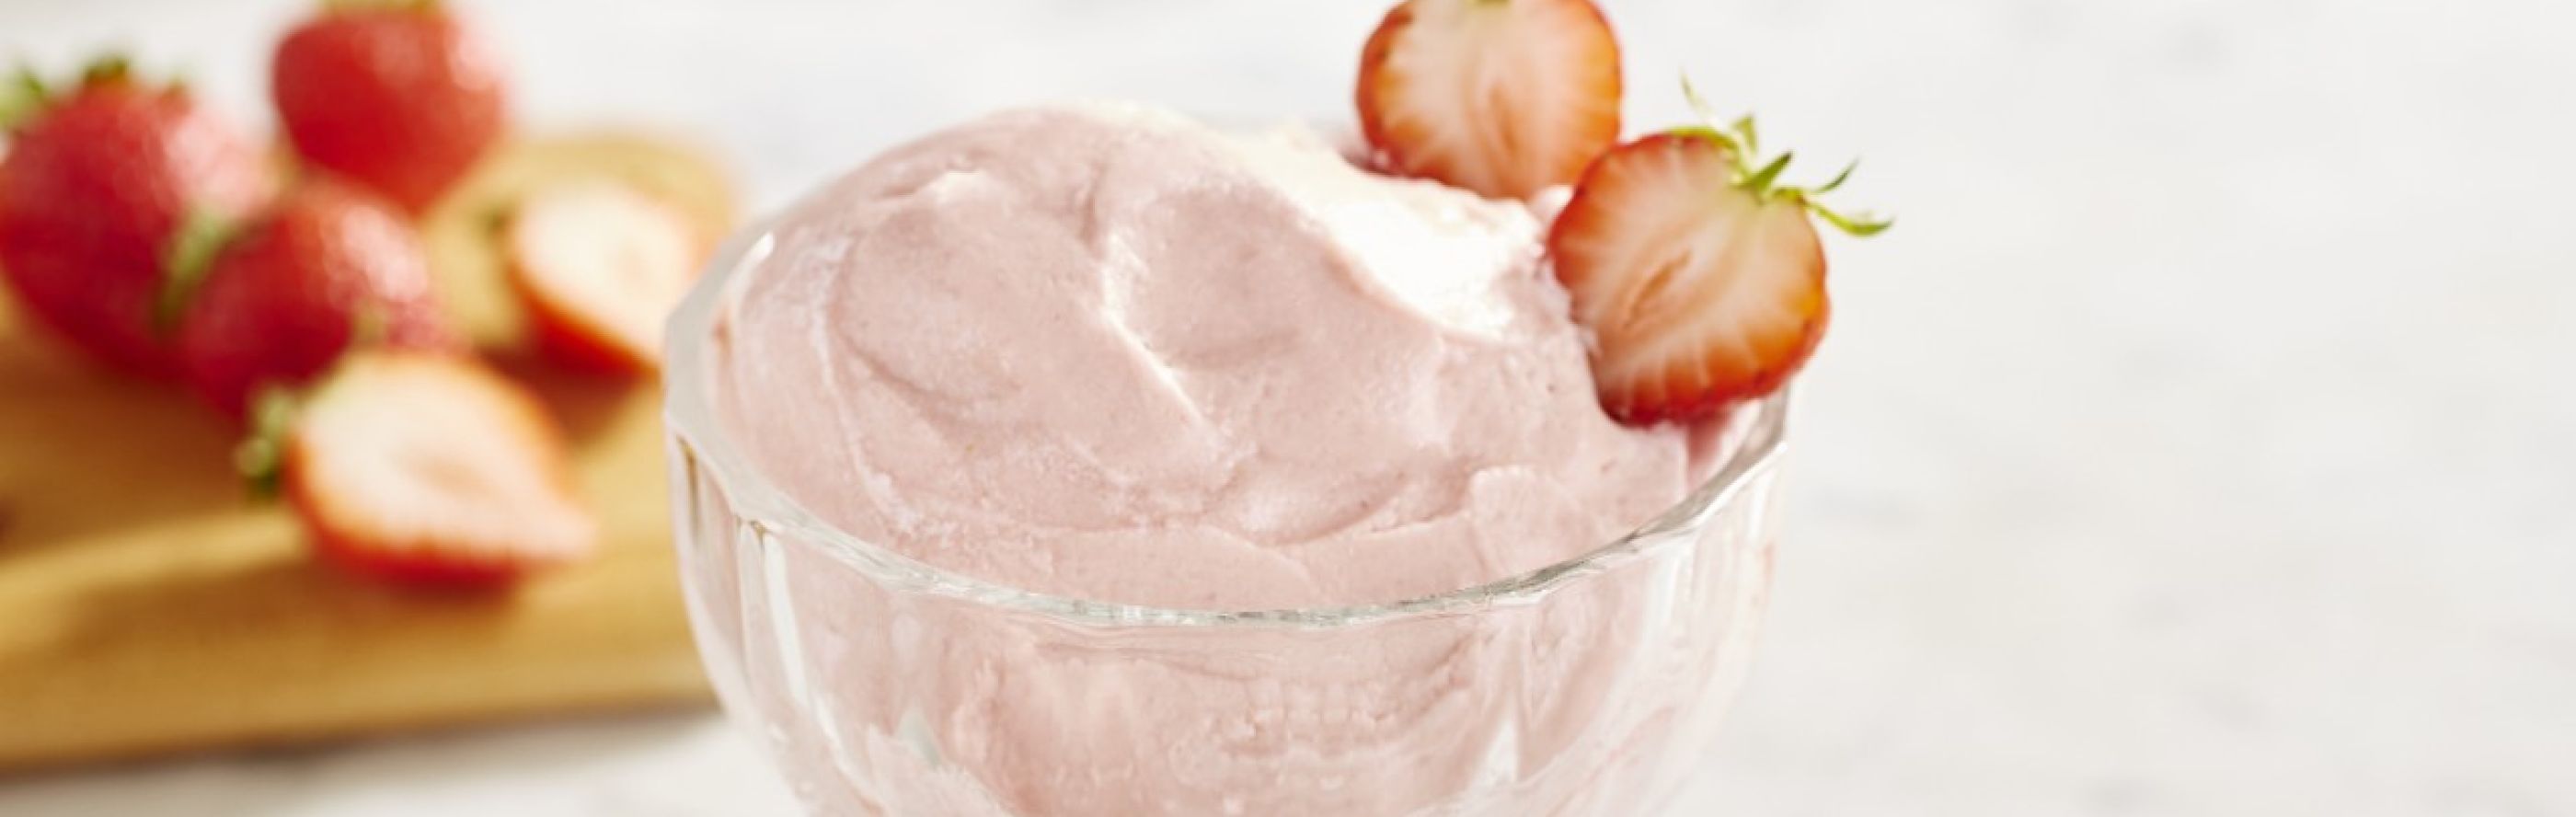 Strawberry ice cream in a glass dish.